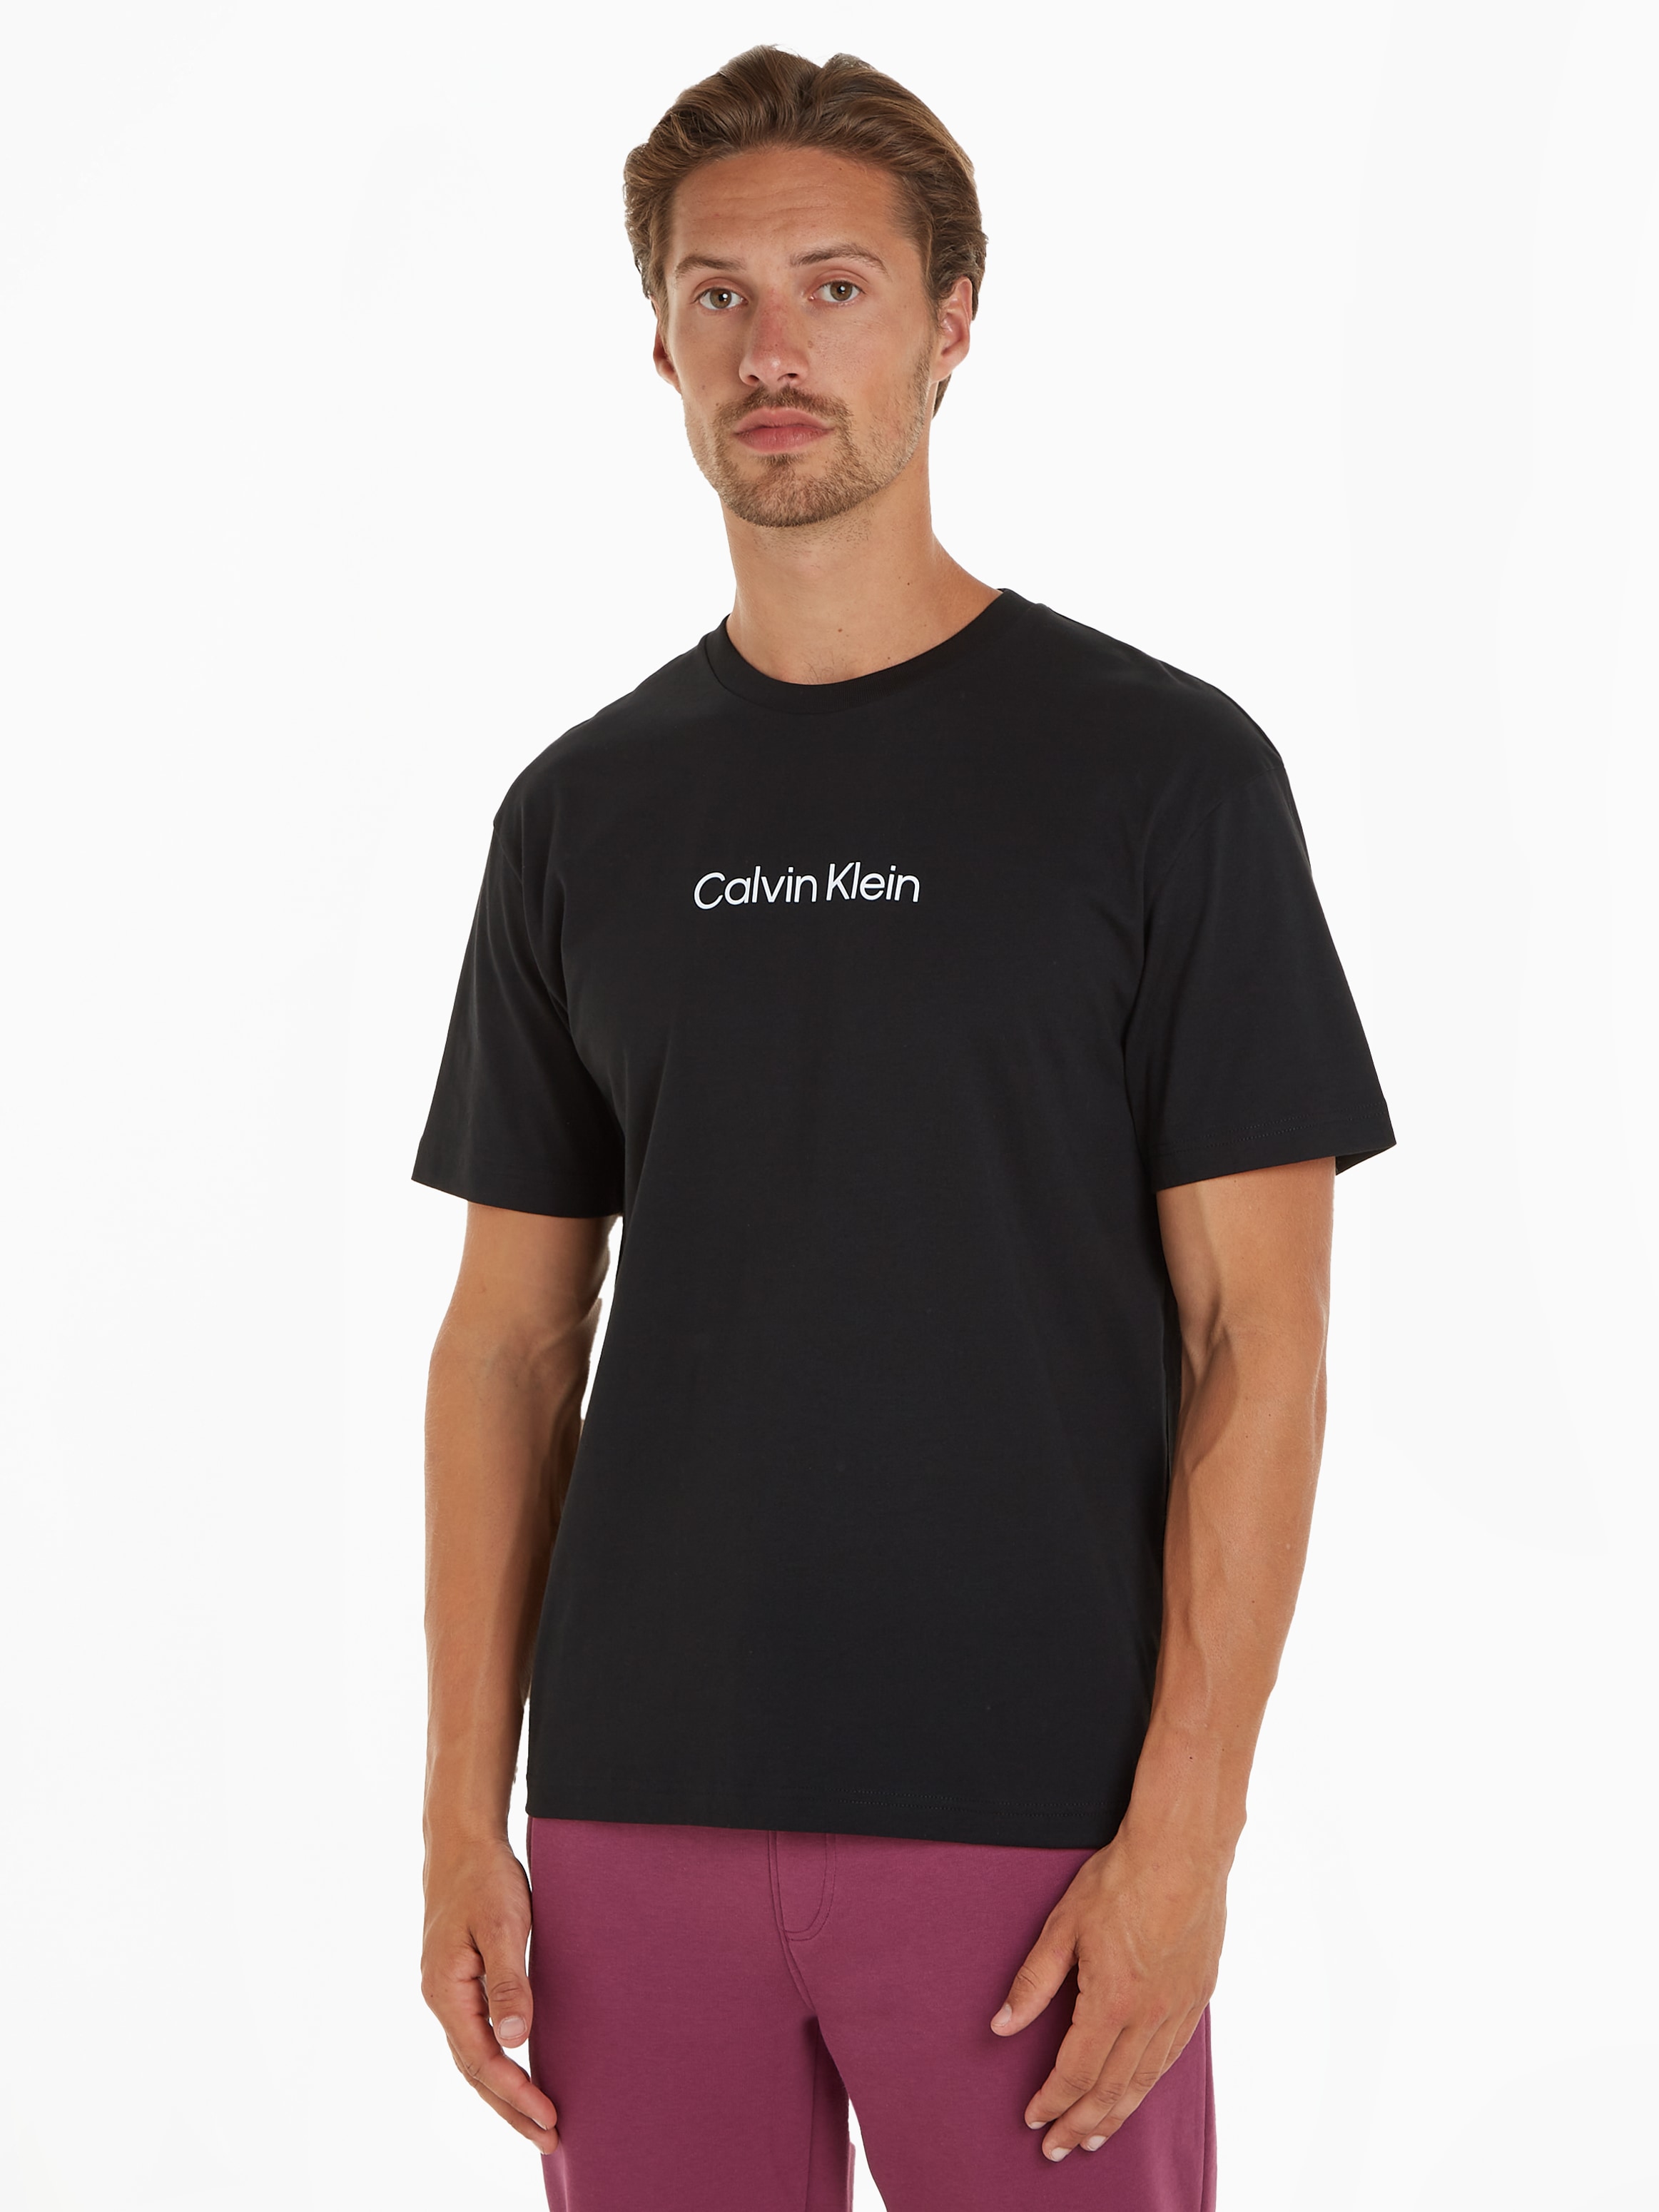 LOGO T-SHIRT« Klein COMFORT »HERO | T-Shirt Calvin BAUR für ▷